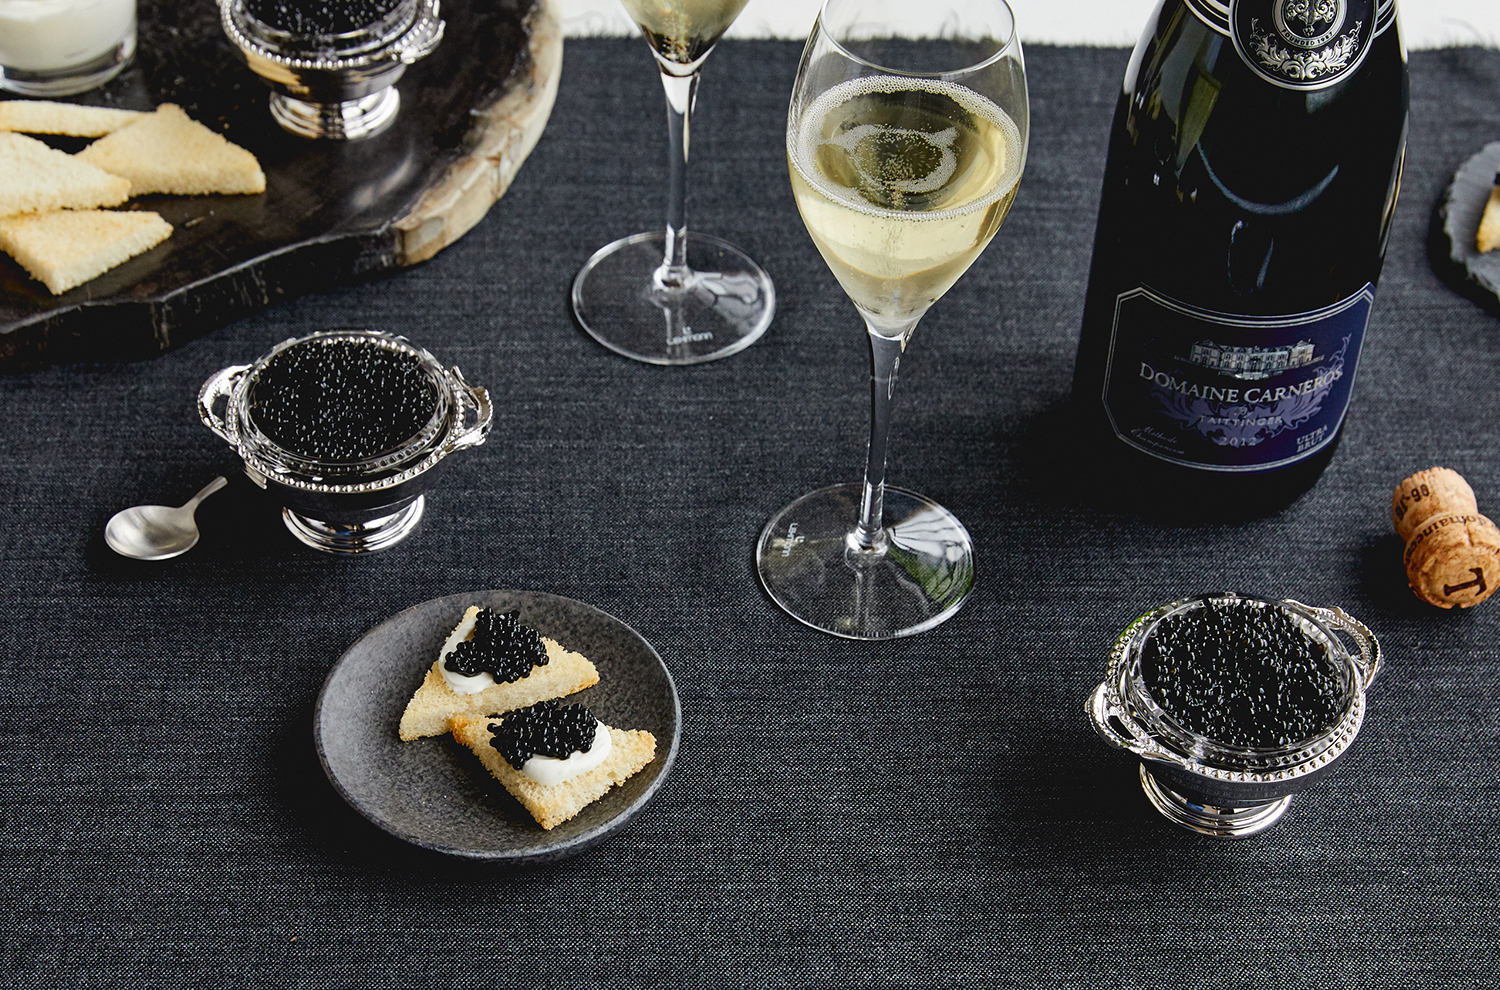 Caviar and sparkling wine event 